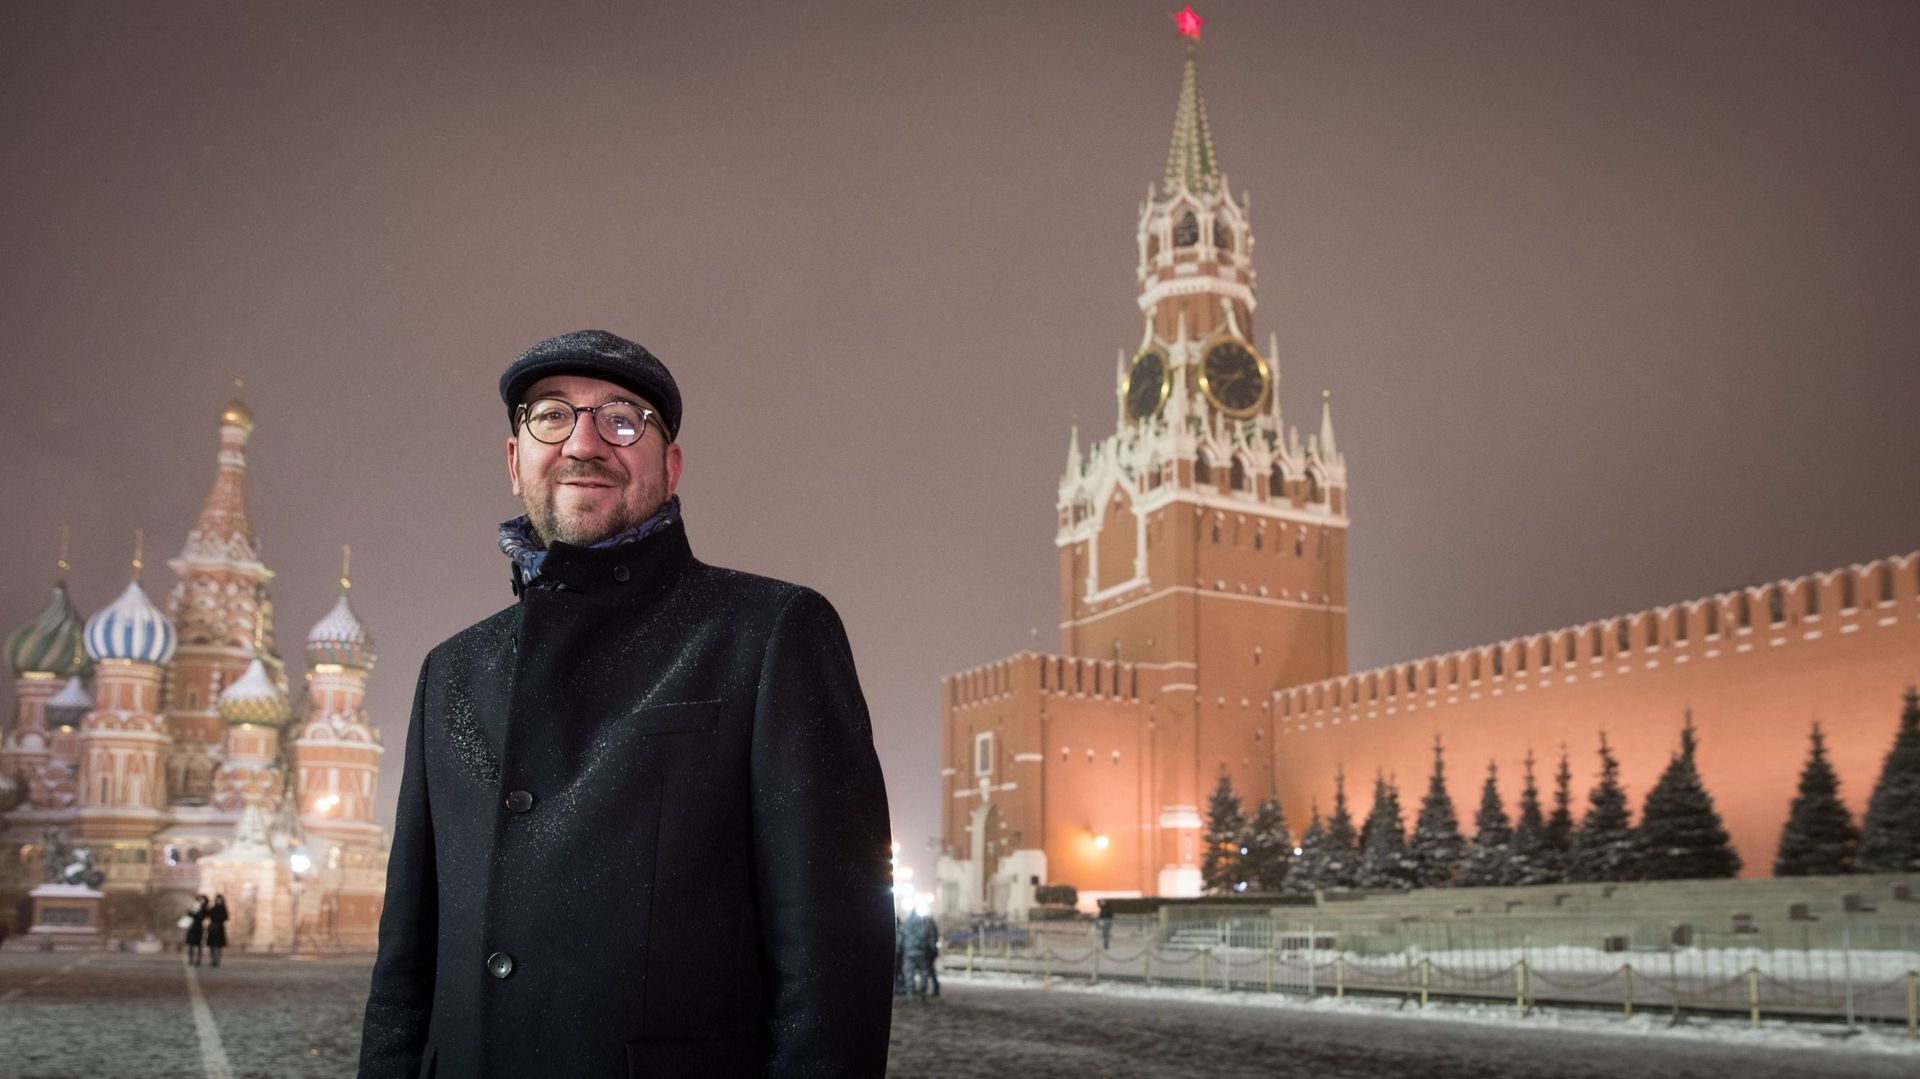 En Russie, Charles Michel abordera les droits de l'Homme: "Il n'y a pas de tabou"